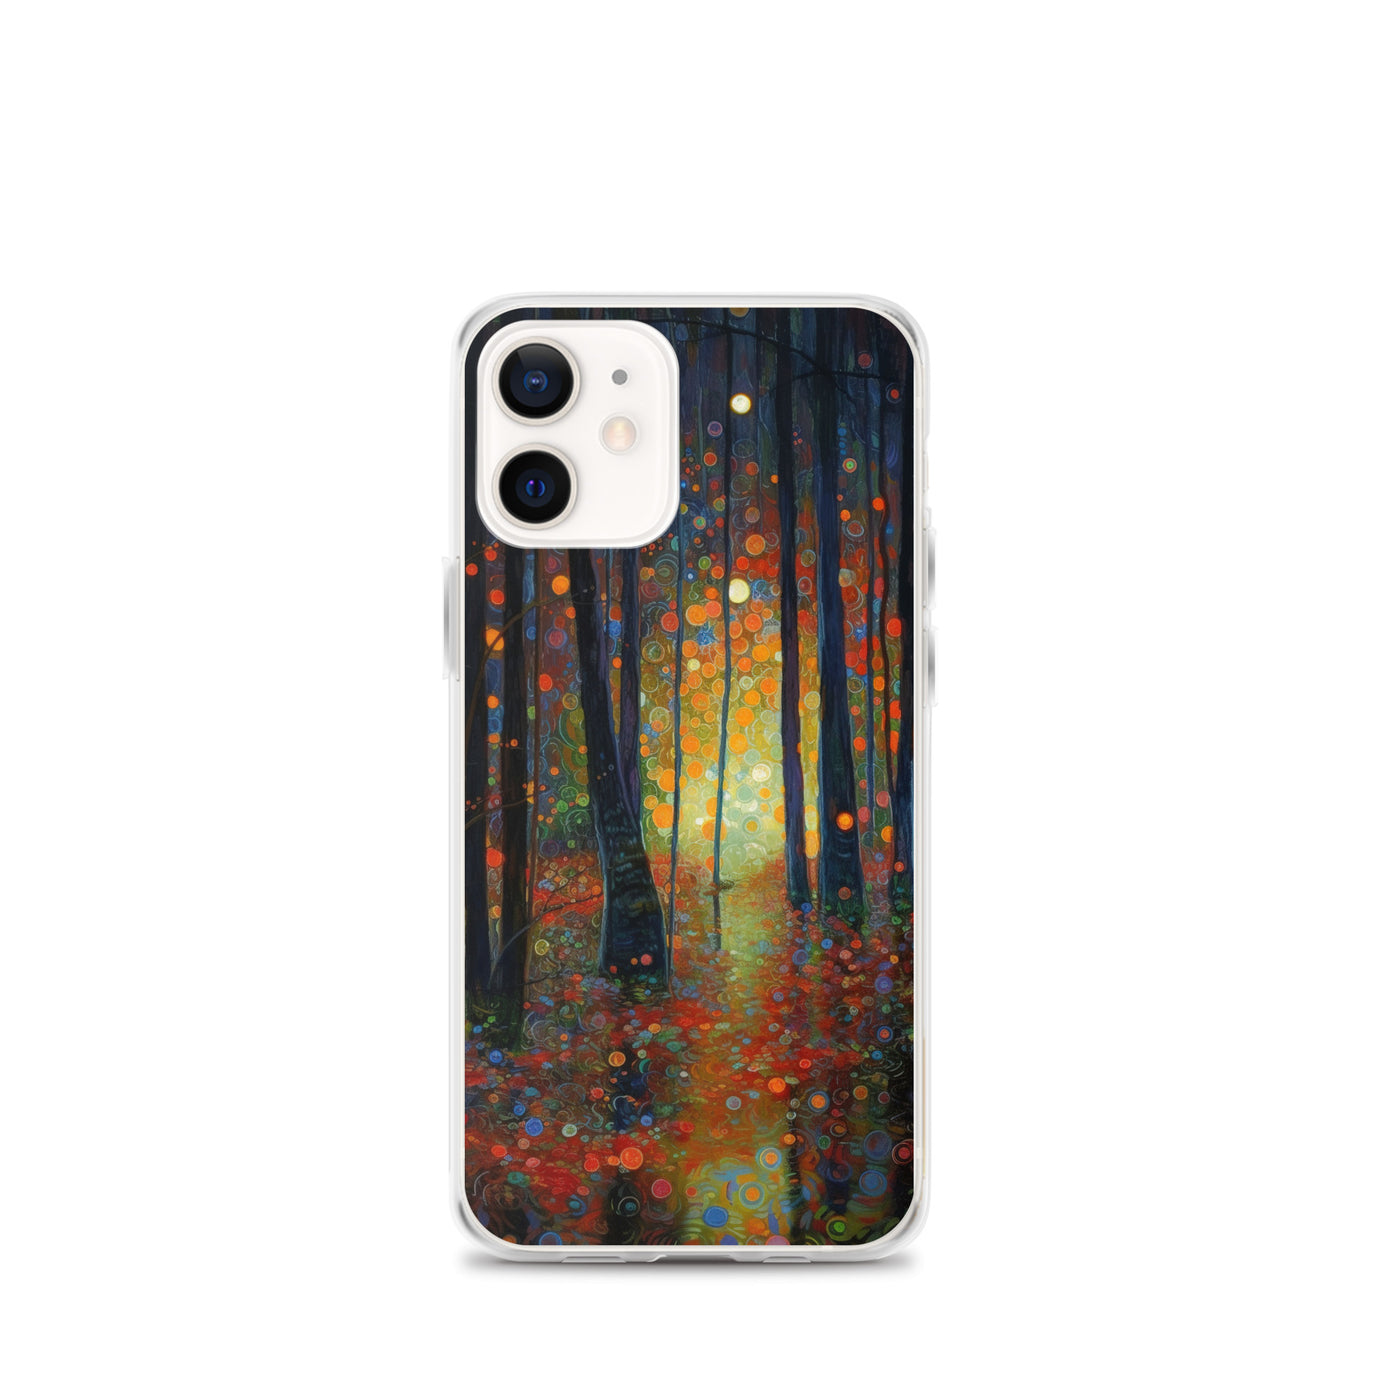 Wald voller Bäume - Herbstliche Stimmung - Malerei - iPhone Schutzhülle (durchsichtig) camping xxx iPhone 12 mini